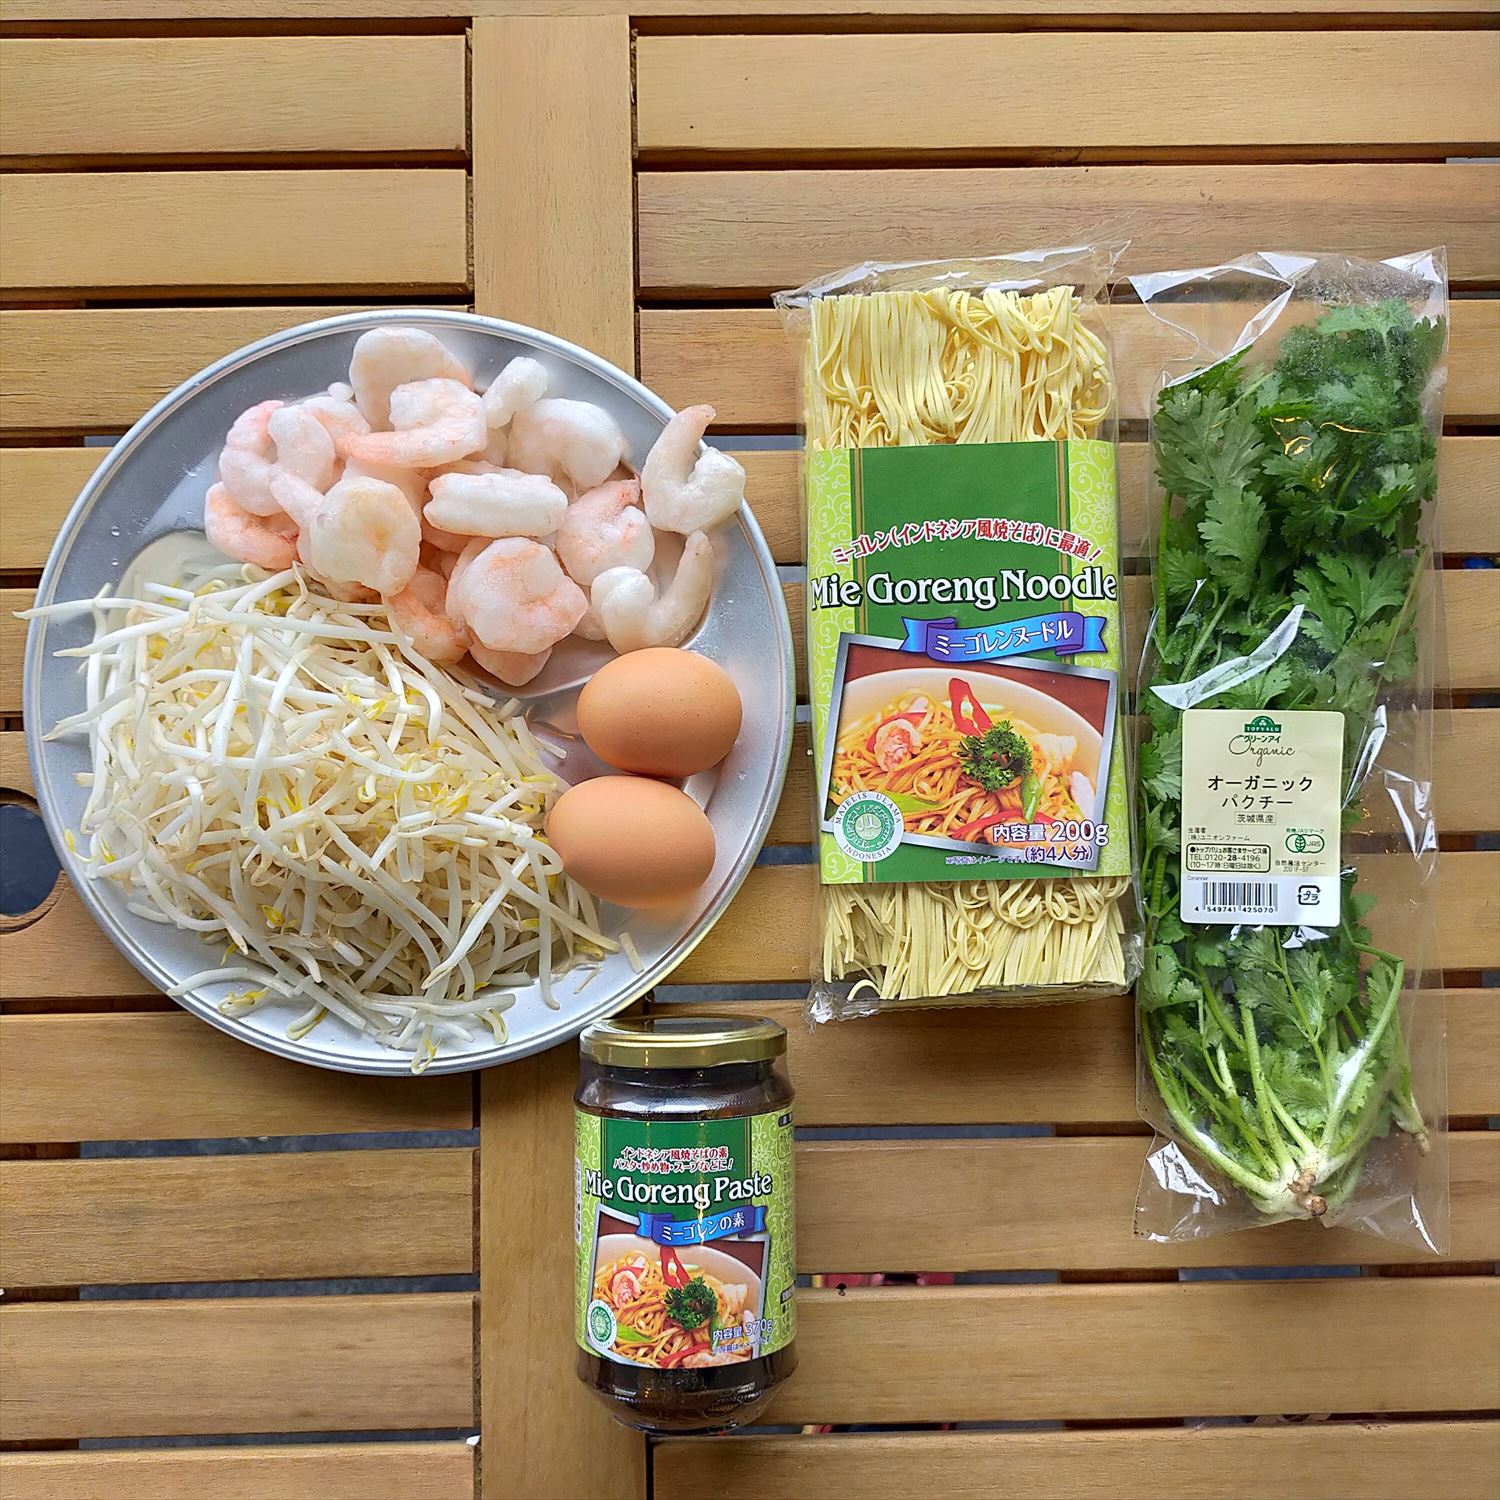 業務スーパーの食材を使ったエスニック料理 インドネシア ミーゴレン をご紹介 料理 レシピ Be Pal キャンプ アウトドア 自然派生活の情報源ビーパル